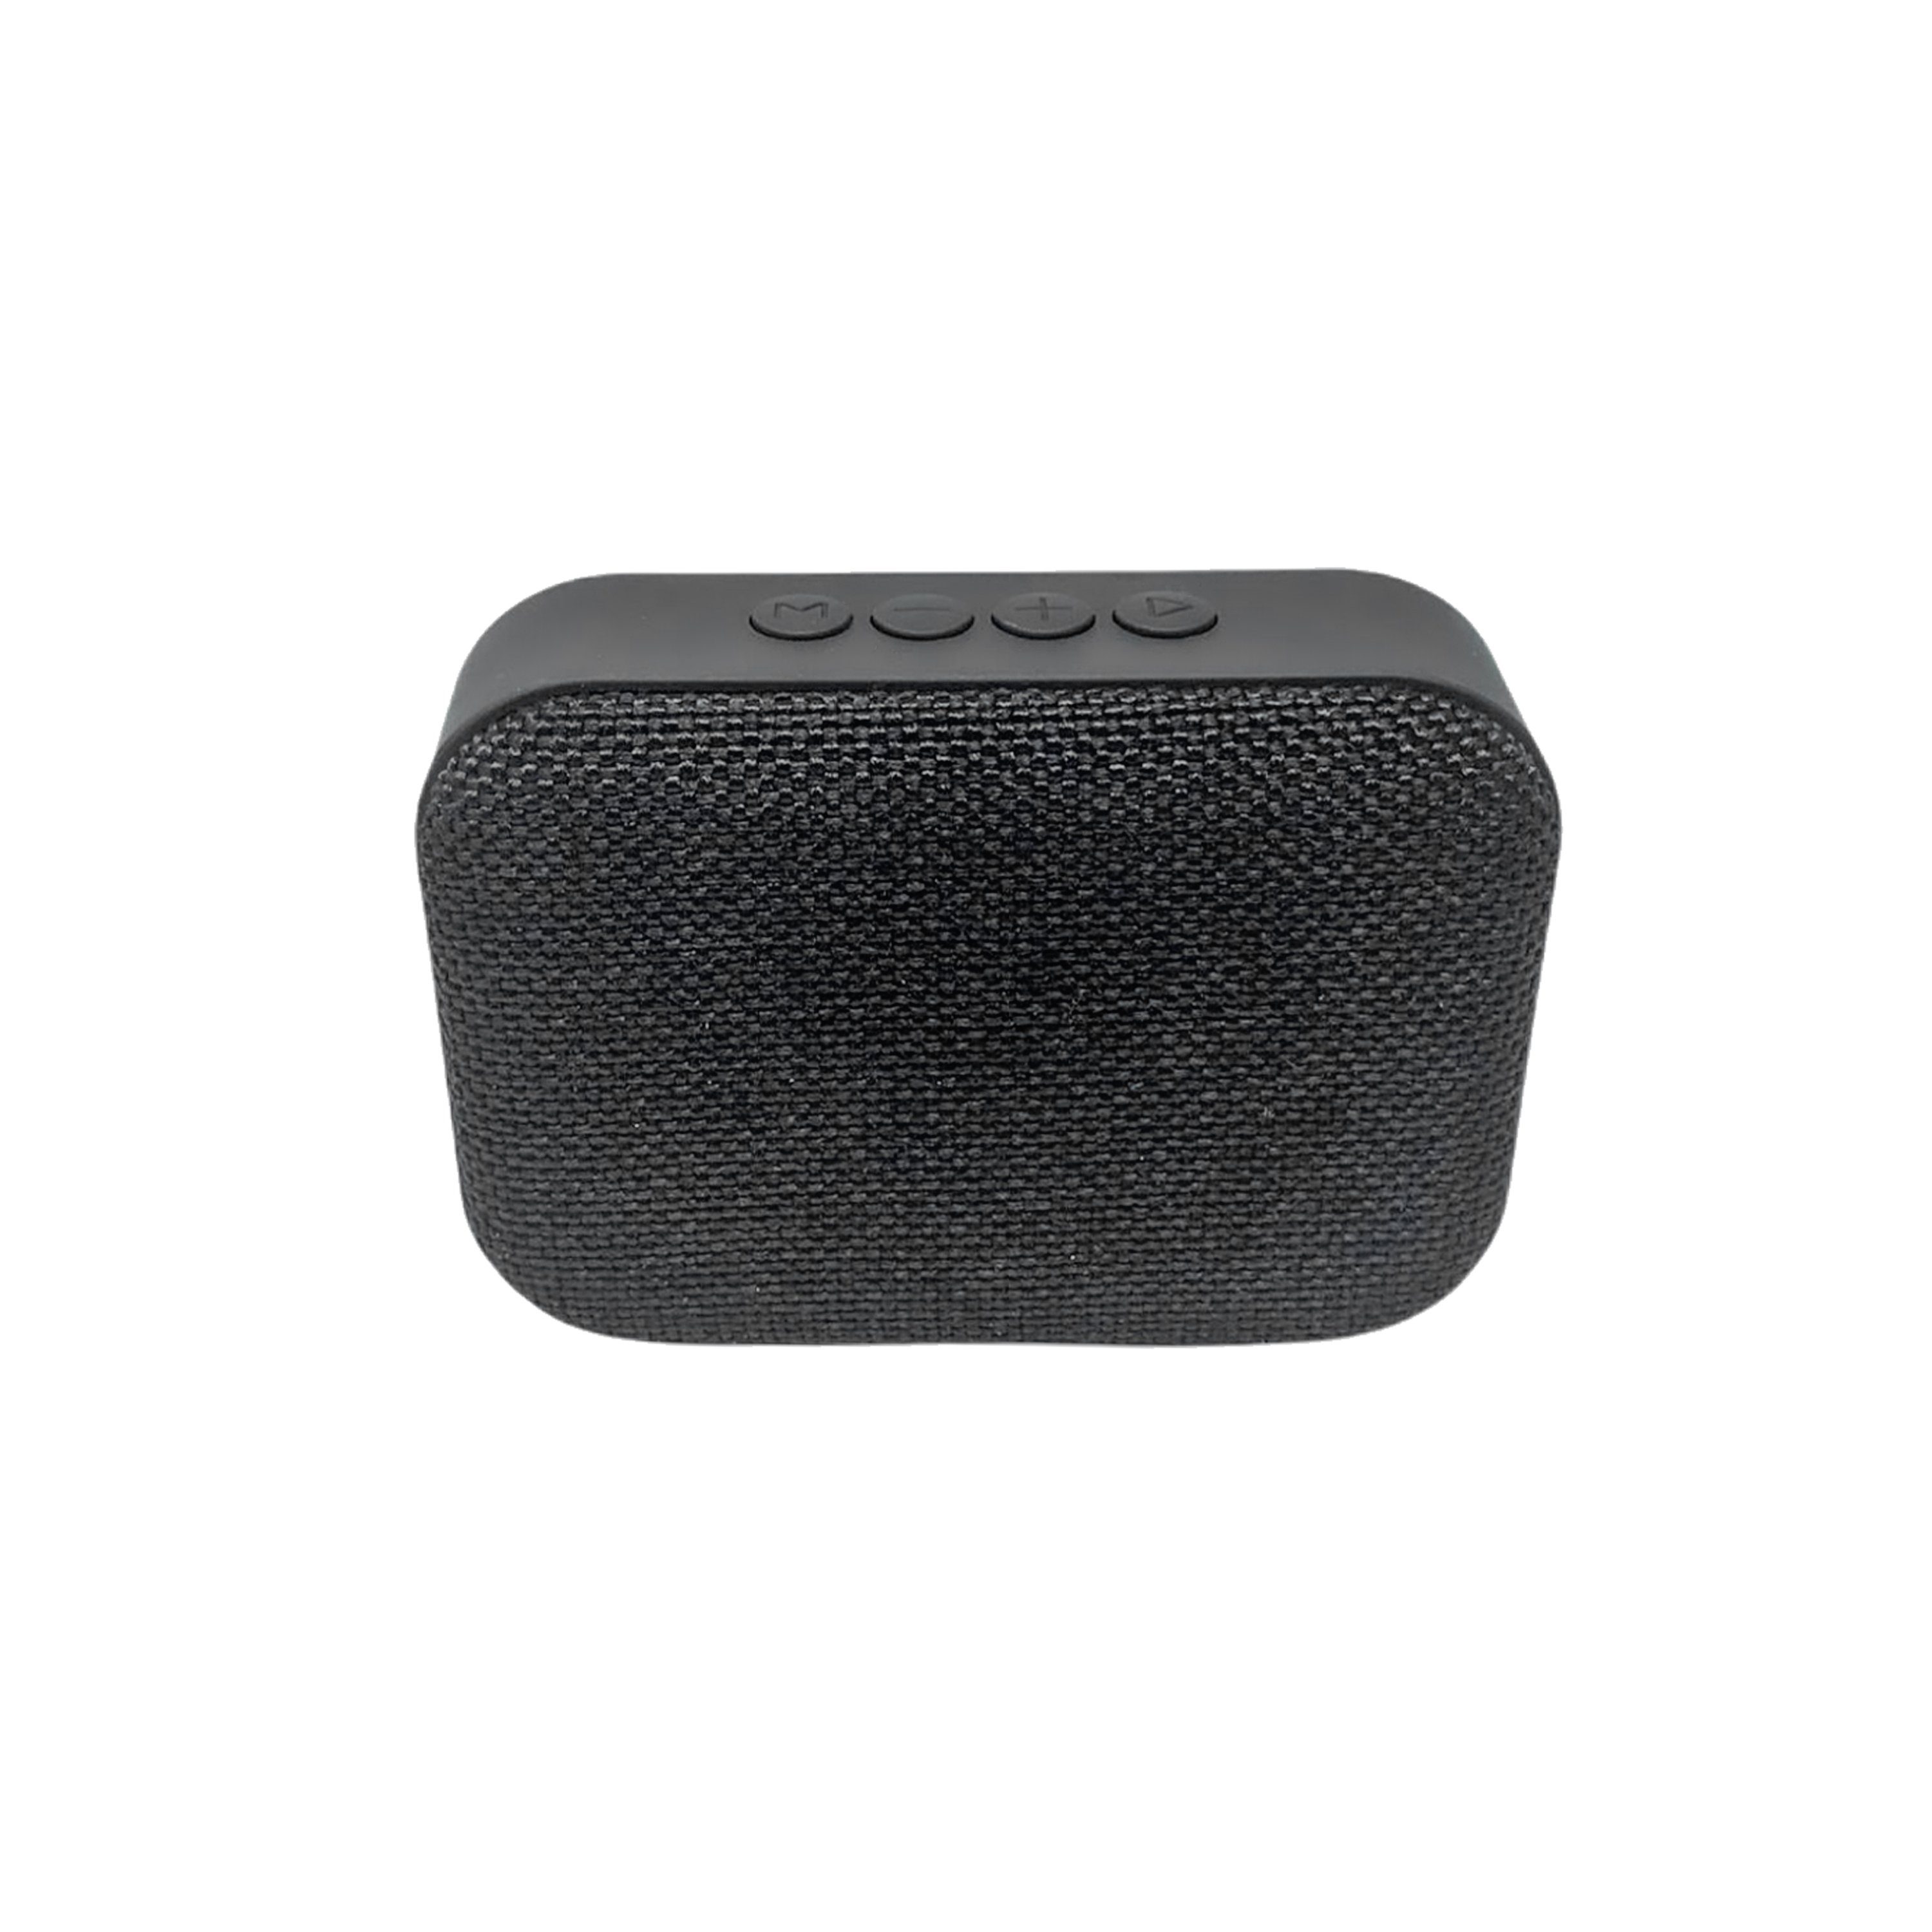 H-basics Bluetooth Lautsprecher - Tragbare Musikbox, Kabellos mit Akku,  Unterstützt TF-Karte, Ideal für Outdoor Camping Wandern Pool  Bluetooth-Speaker online kaufen | OTTO